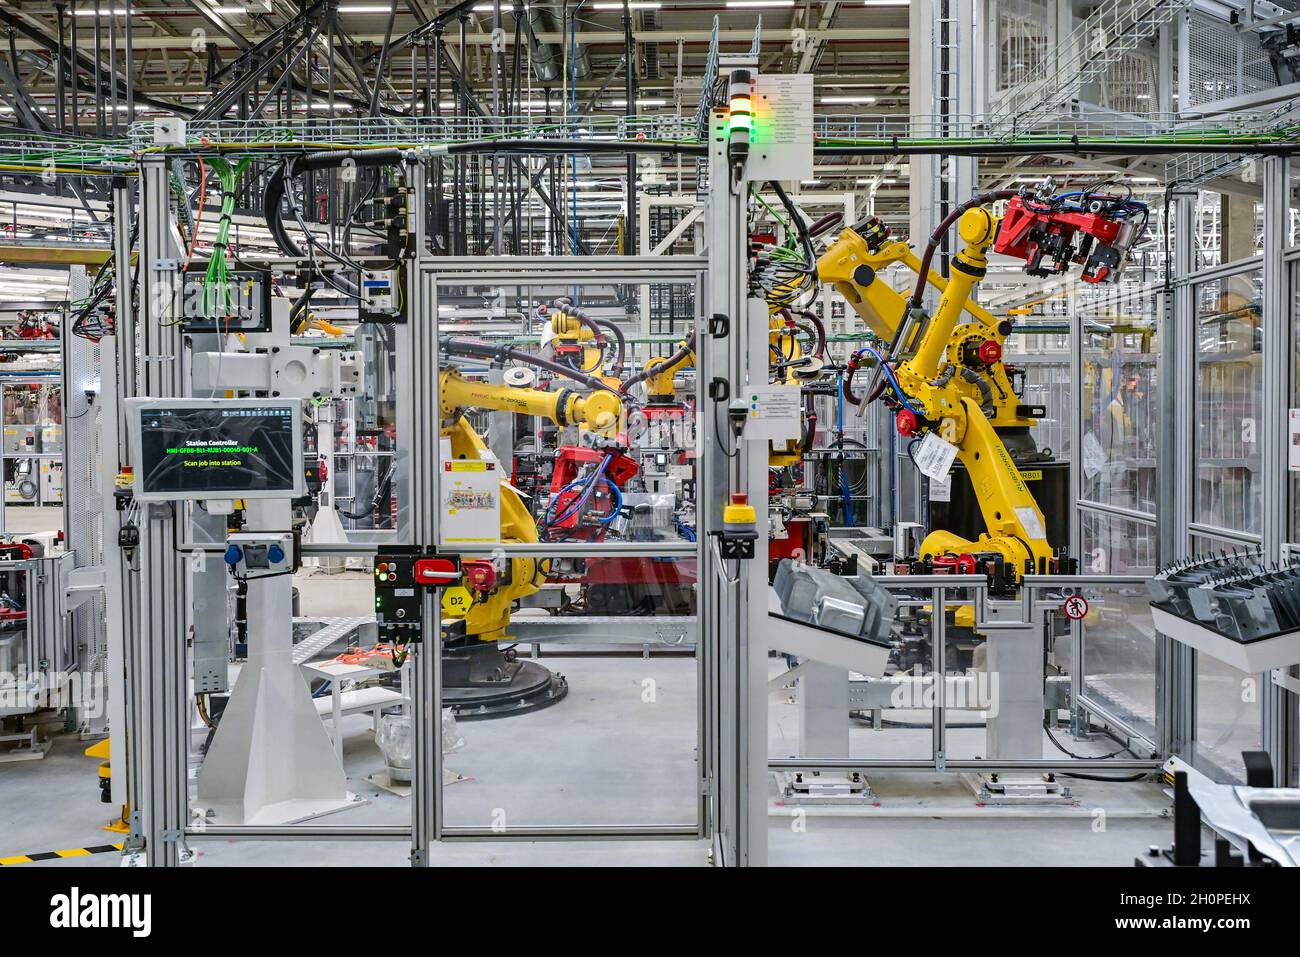 09 octobre 2021, Brandebourg, Grünheide: Des robots sont vus dans la production d'un modèle y de Tesla à la journée ouverte dans une salle de production du Gigalactory de Tesla.À Grünheide, à l'est de Berlin, les premiers véhicules seront en sortie de la chaîne de production à partir de la fin de 2021.La société américaine prévoit de construire environ 500,000 modèles Ys ici chaque année.Photo: Patrick Pleul/dpa-Zentralbild/ZB Banque D'Images